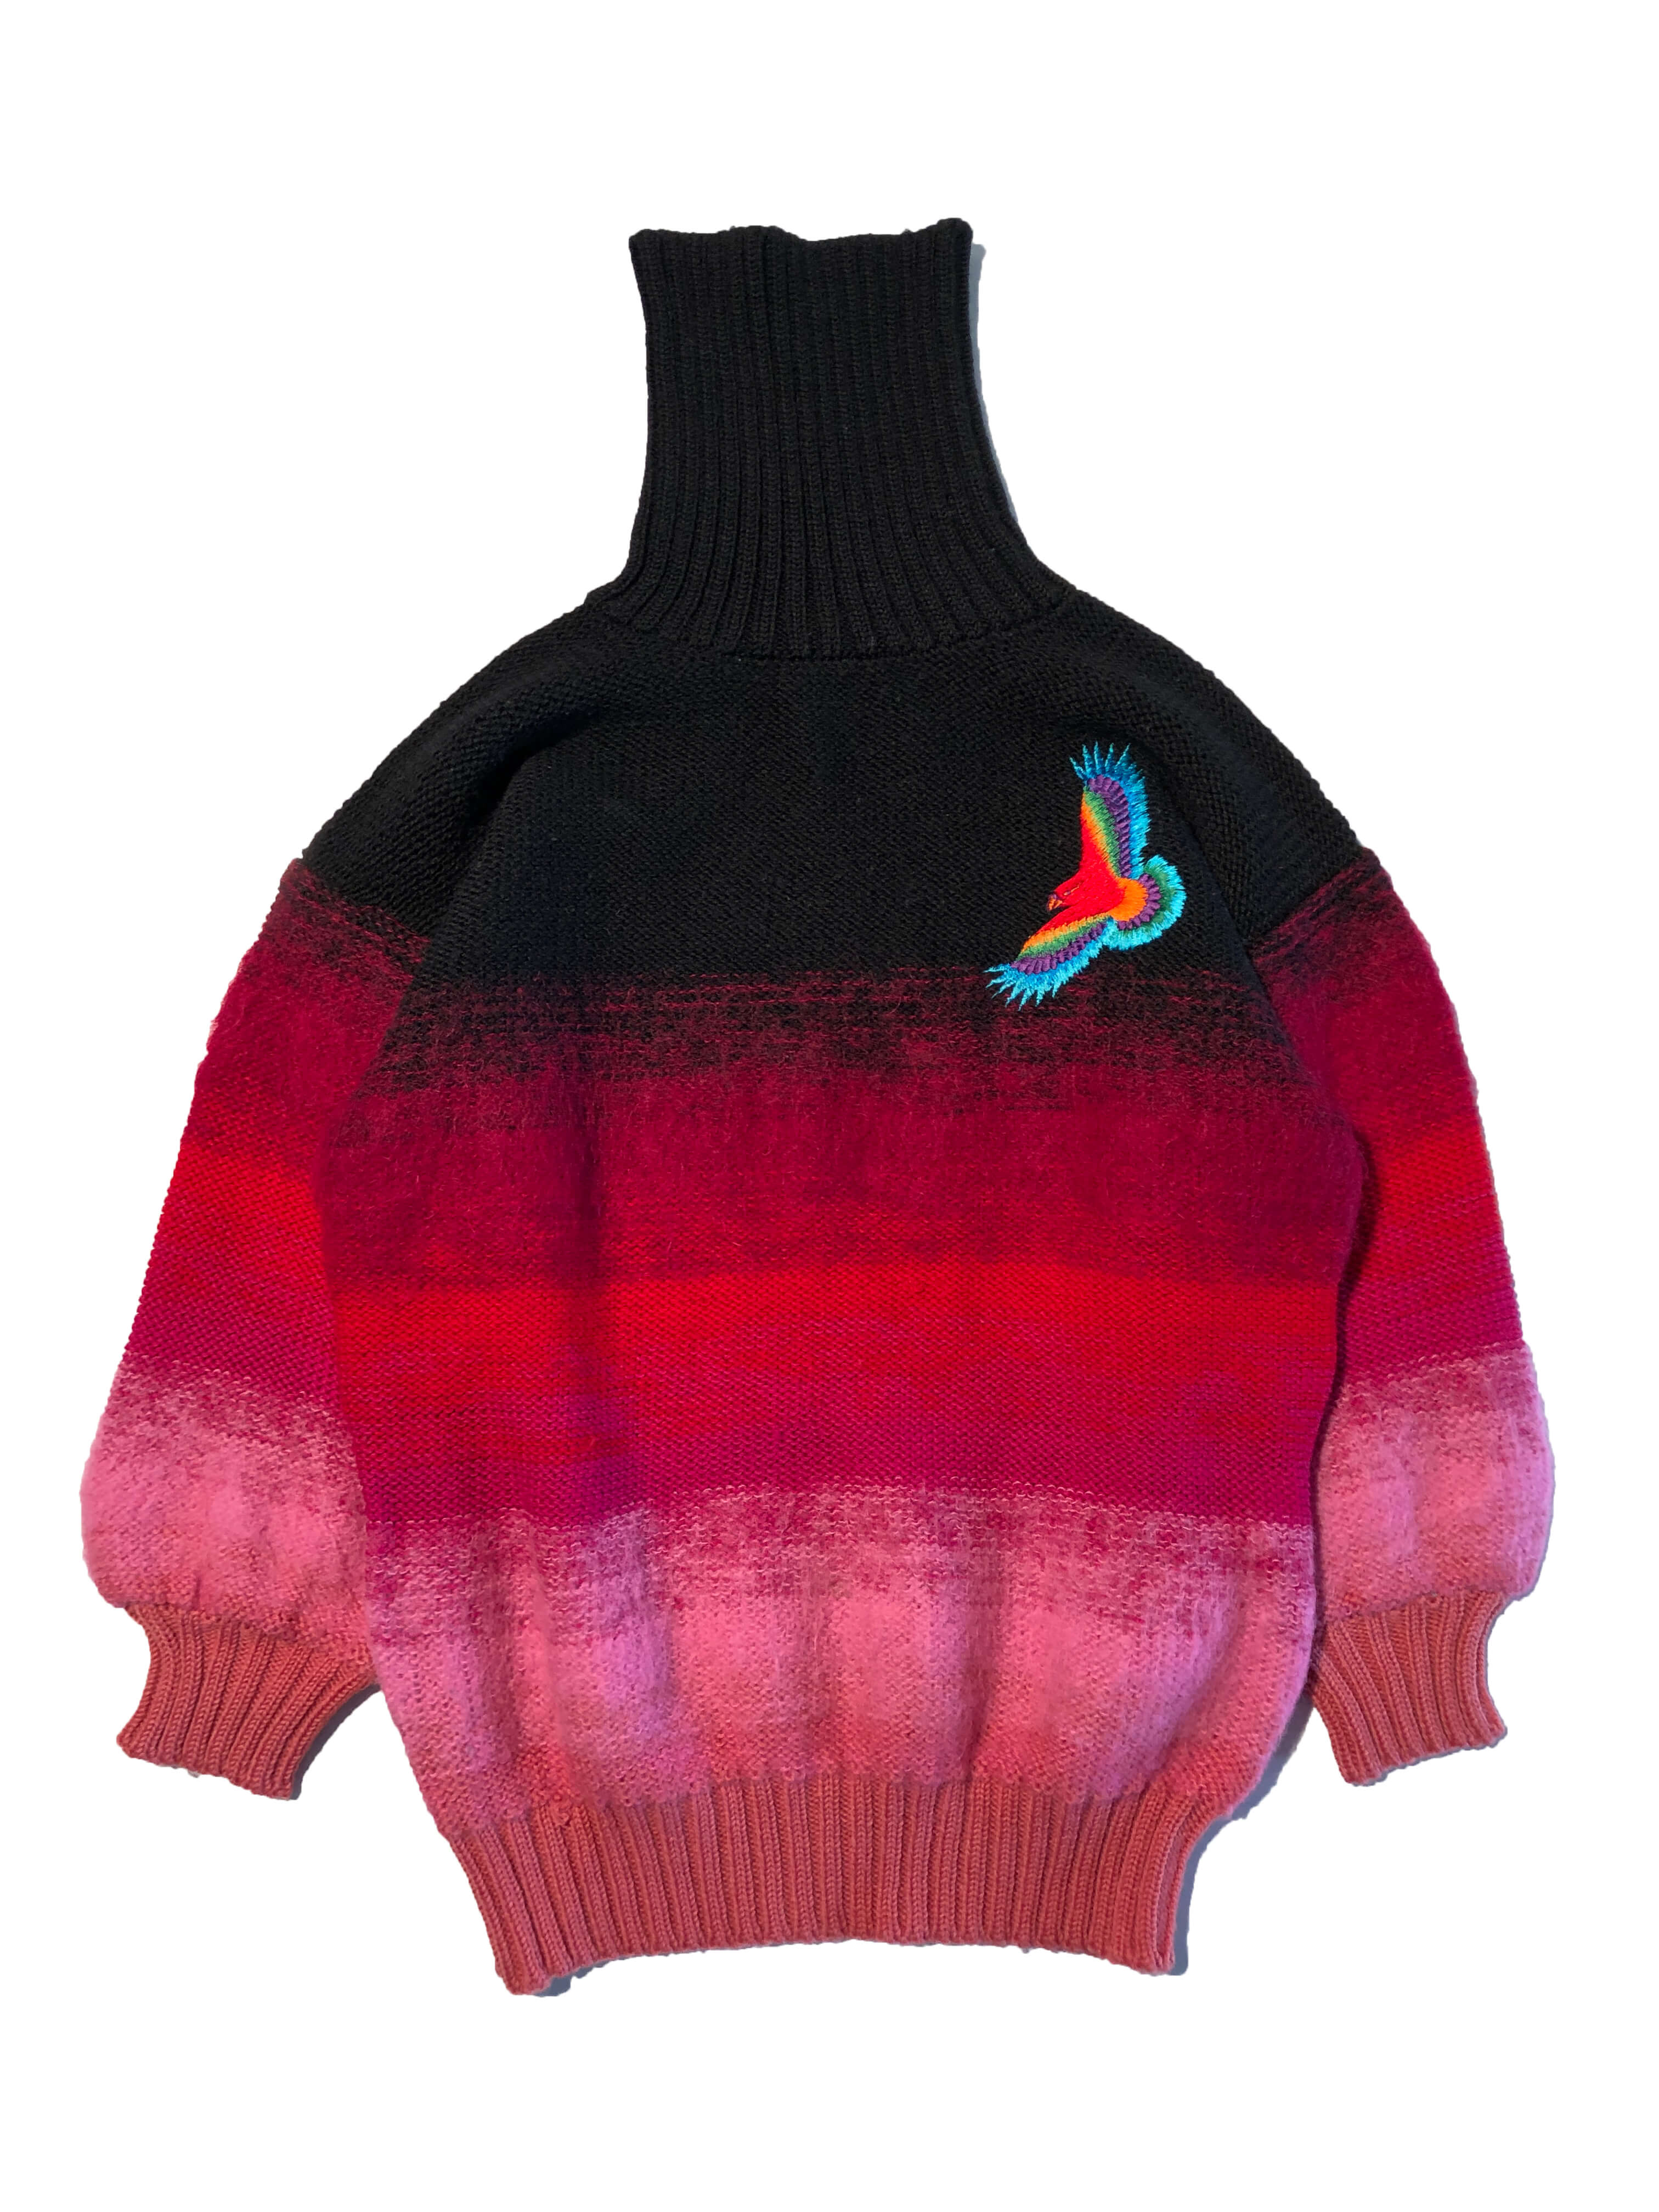 Kansai Yamamoto turtleneck sweater